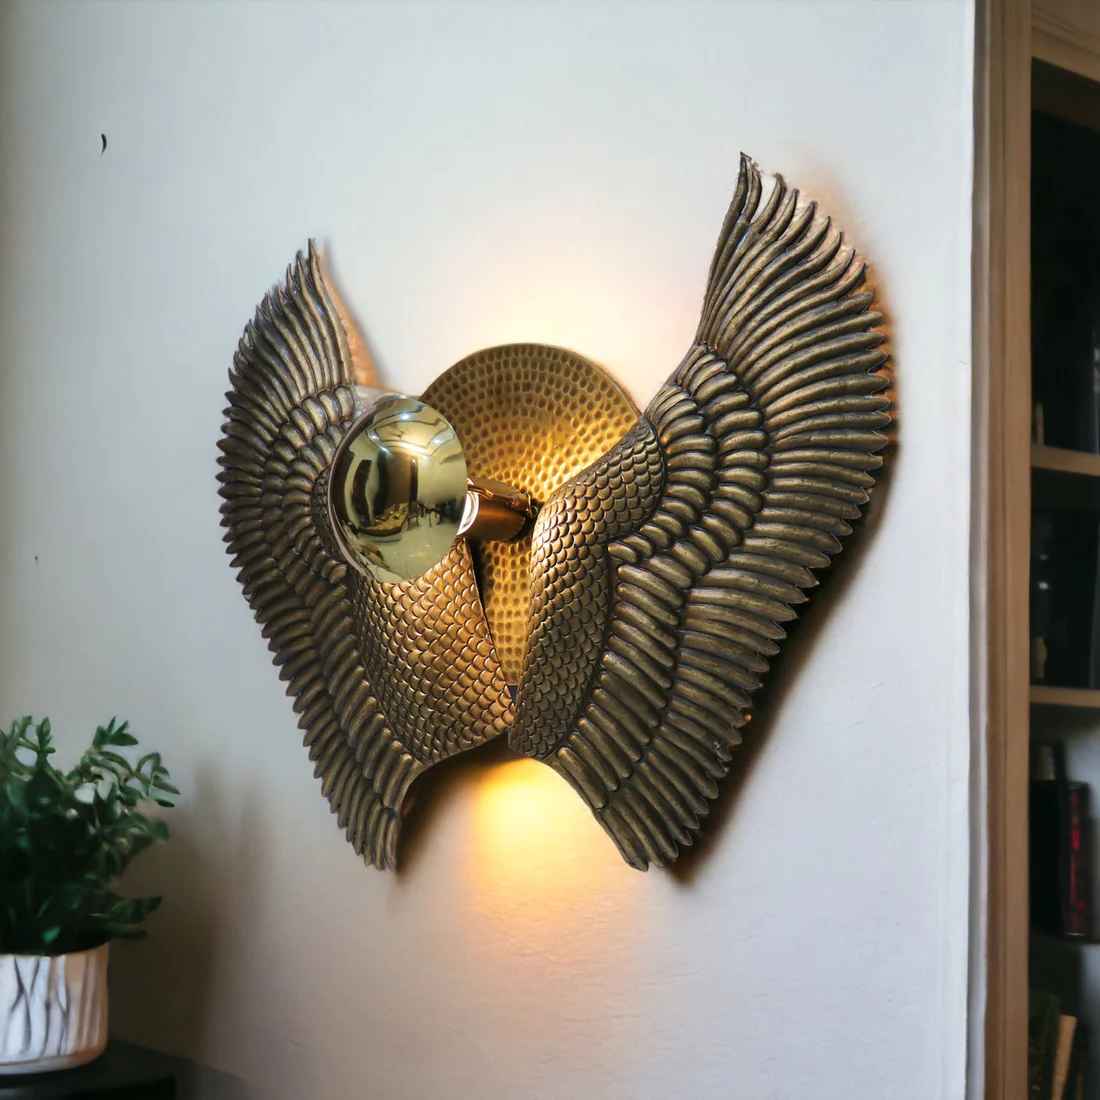 Blazed Wall lamp